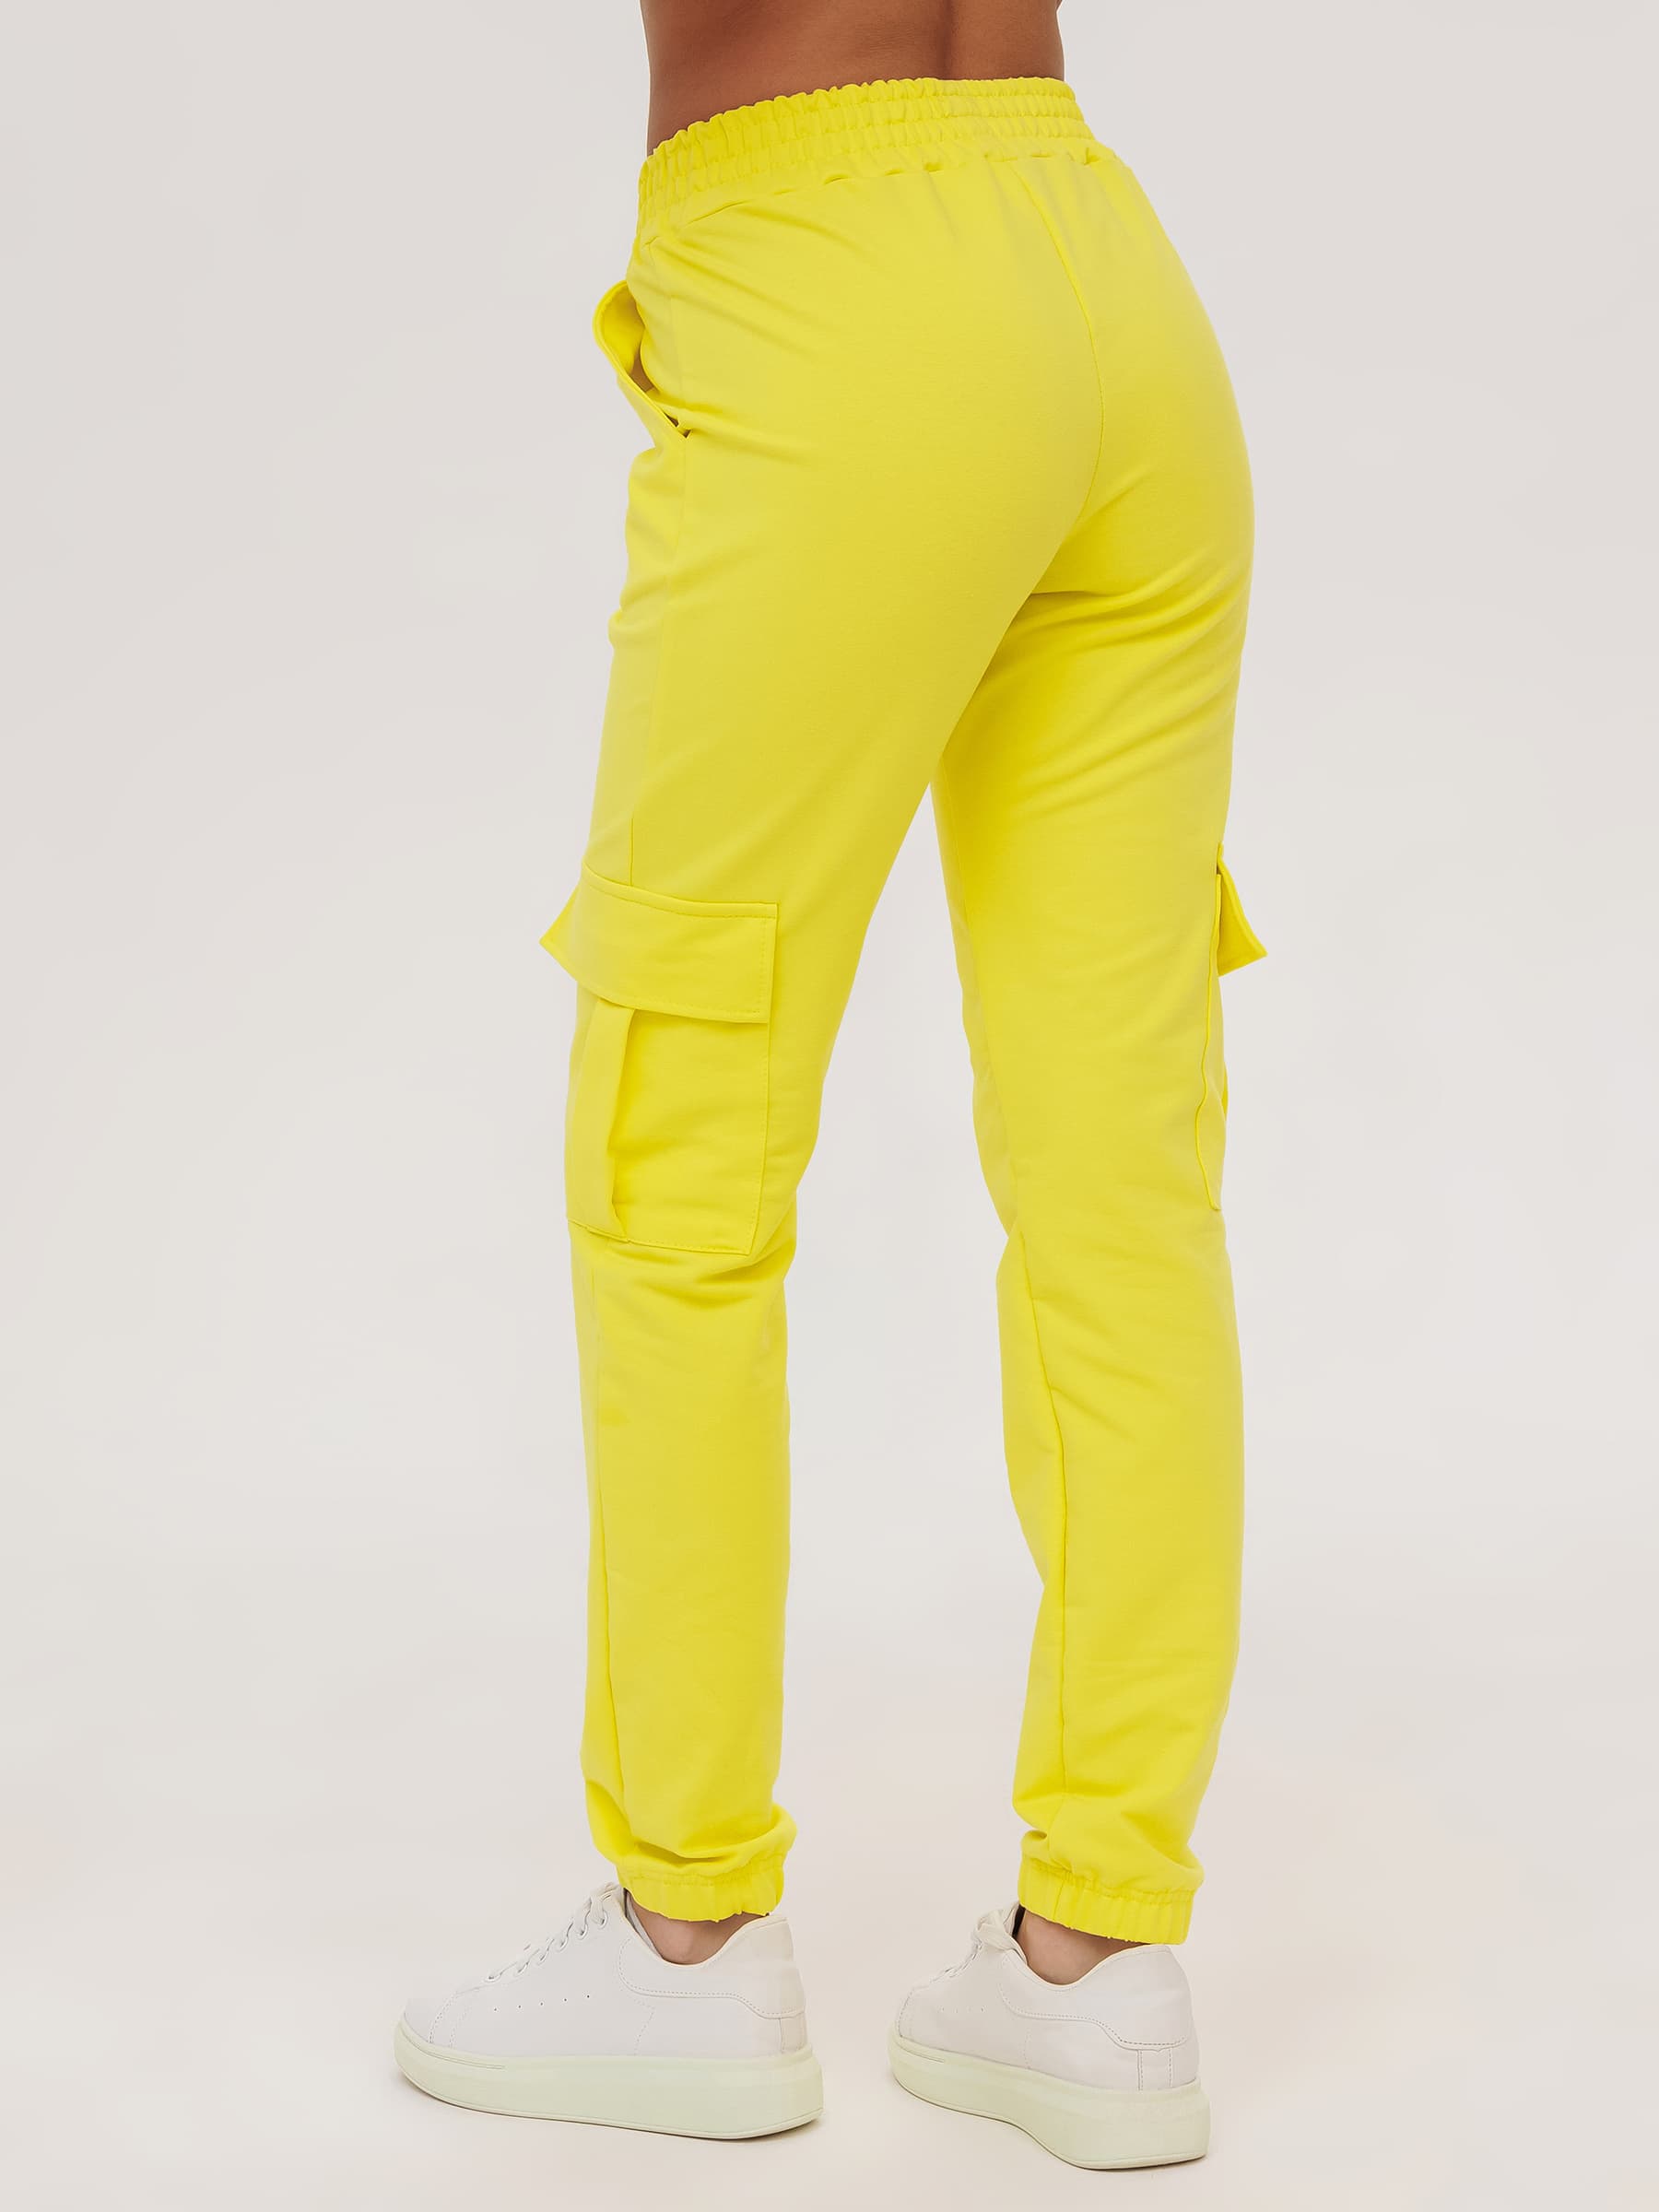 Жен. брюки повседневные арт. 23-0524 Желтый р. 46 Моделлини, размер 46 - фото 7